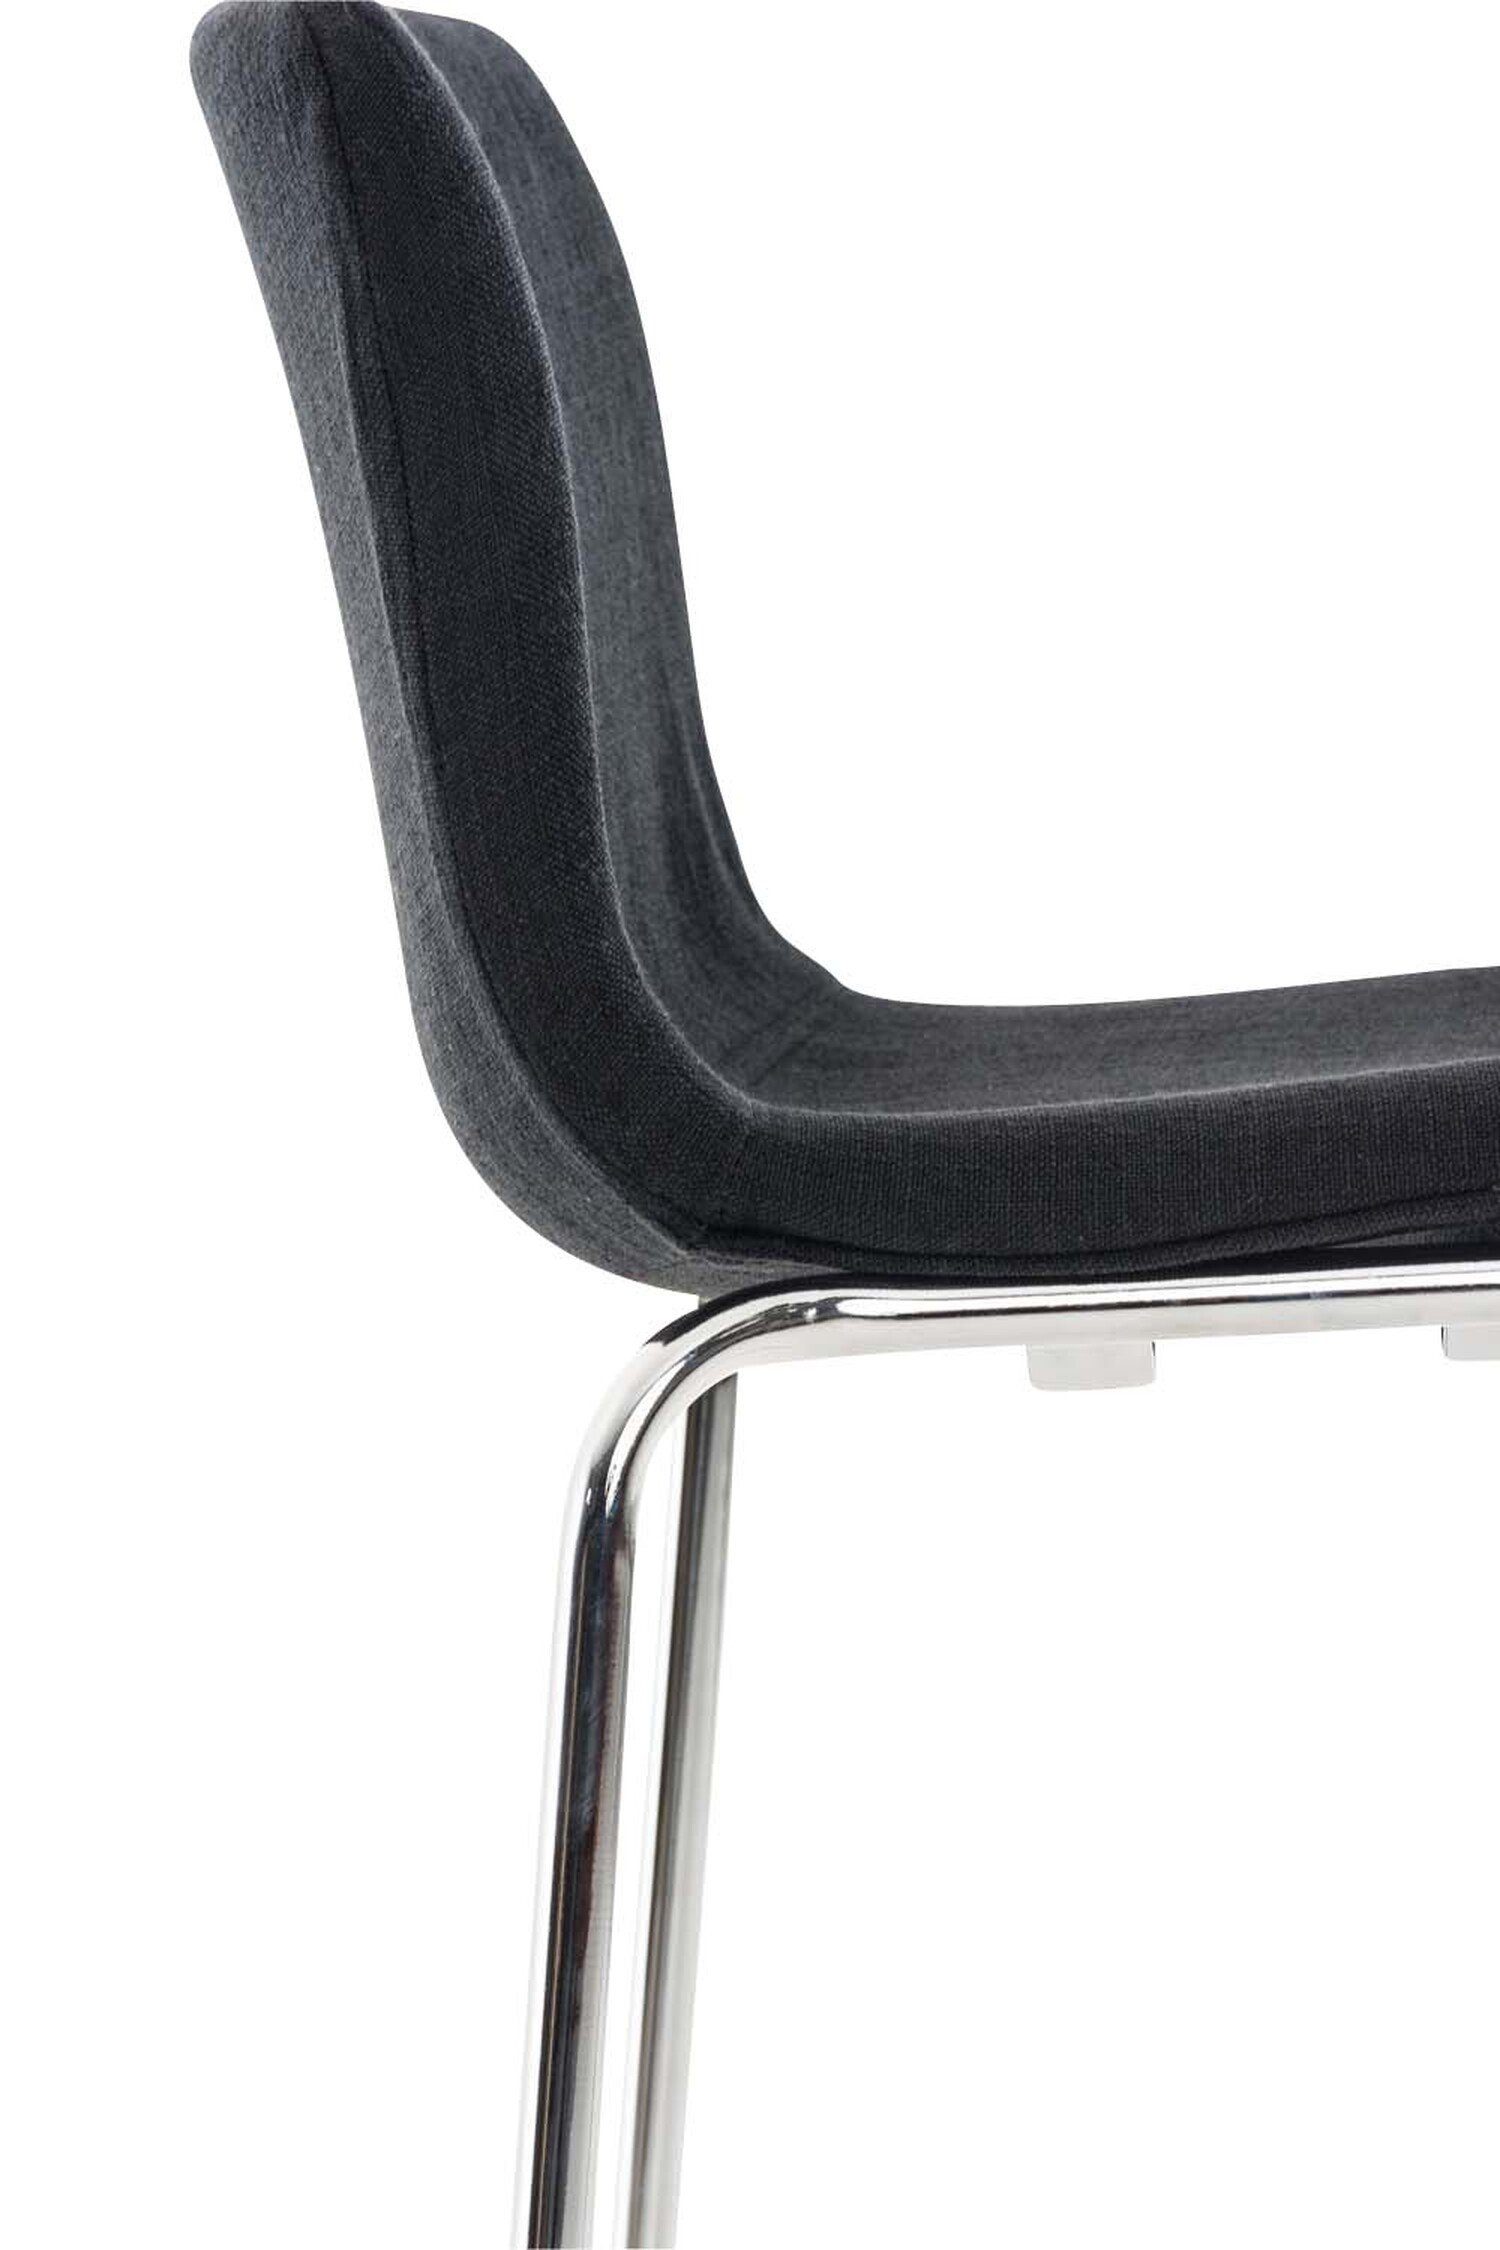 2 für Hocker & Sitzfläche: Gestell Fußstütze Metall Chrom TPFLiving - - St., (Set, Schwarz Barhocker Theke Tresenhocker), Küche - mit Stoff Hoover